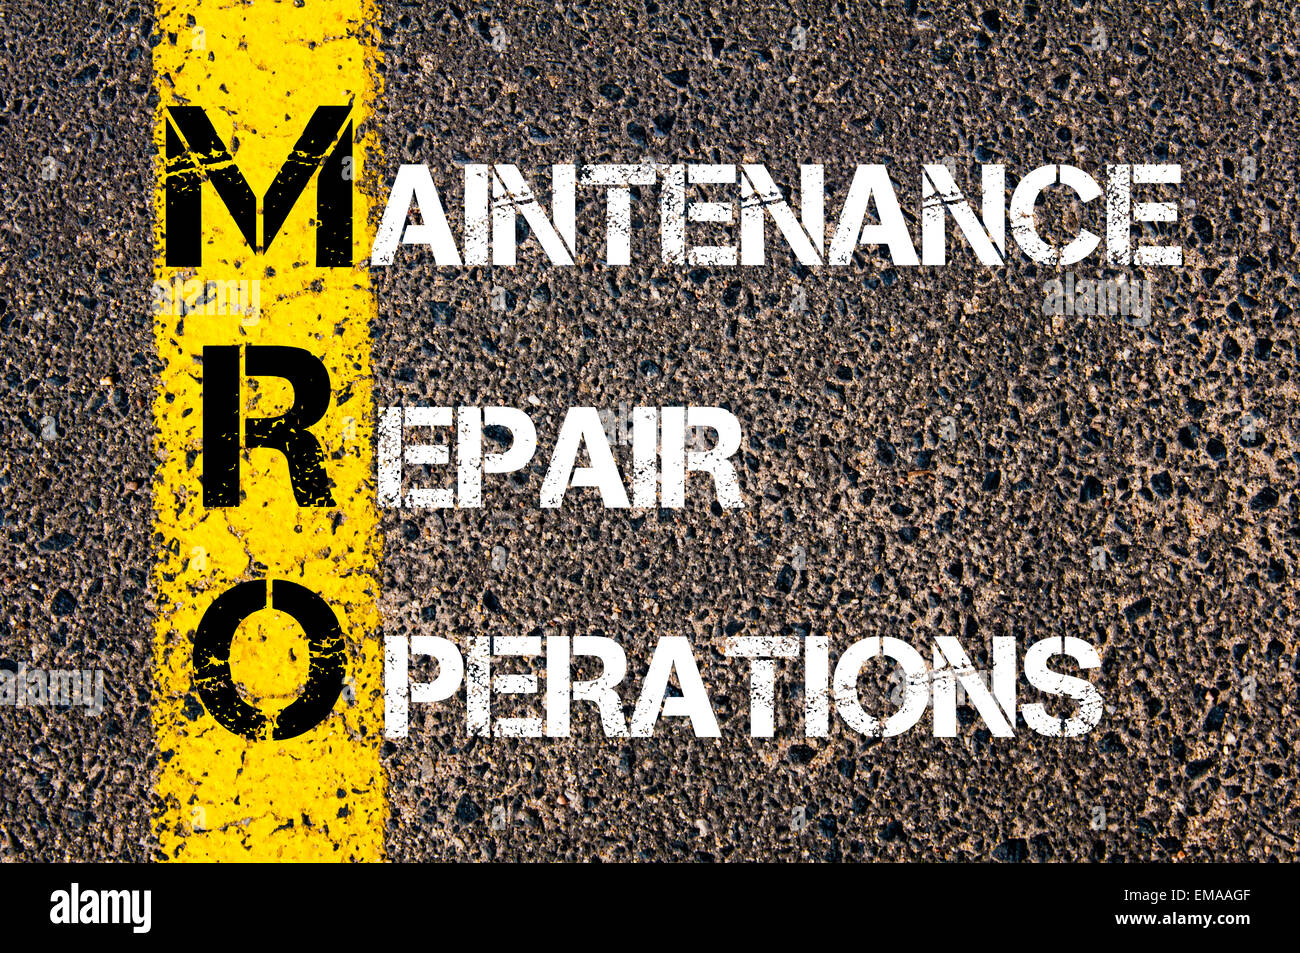 Acronimo di business MRO - manutenzione, riparazione e operazioni. Vernice gialla linea sulla strada contro lo sfondo di asfalto. Immagine concettuale Foto Stock